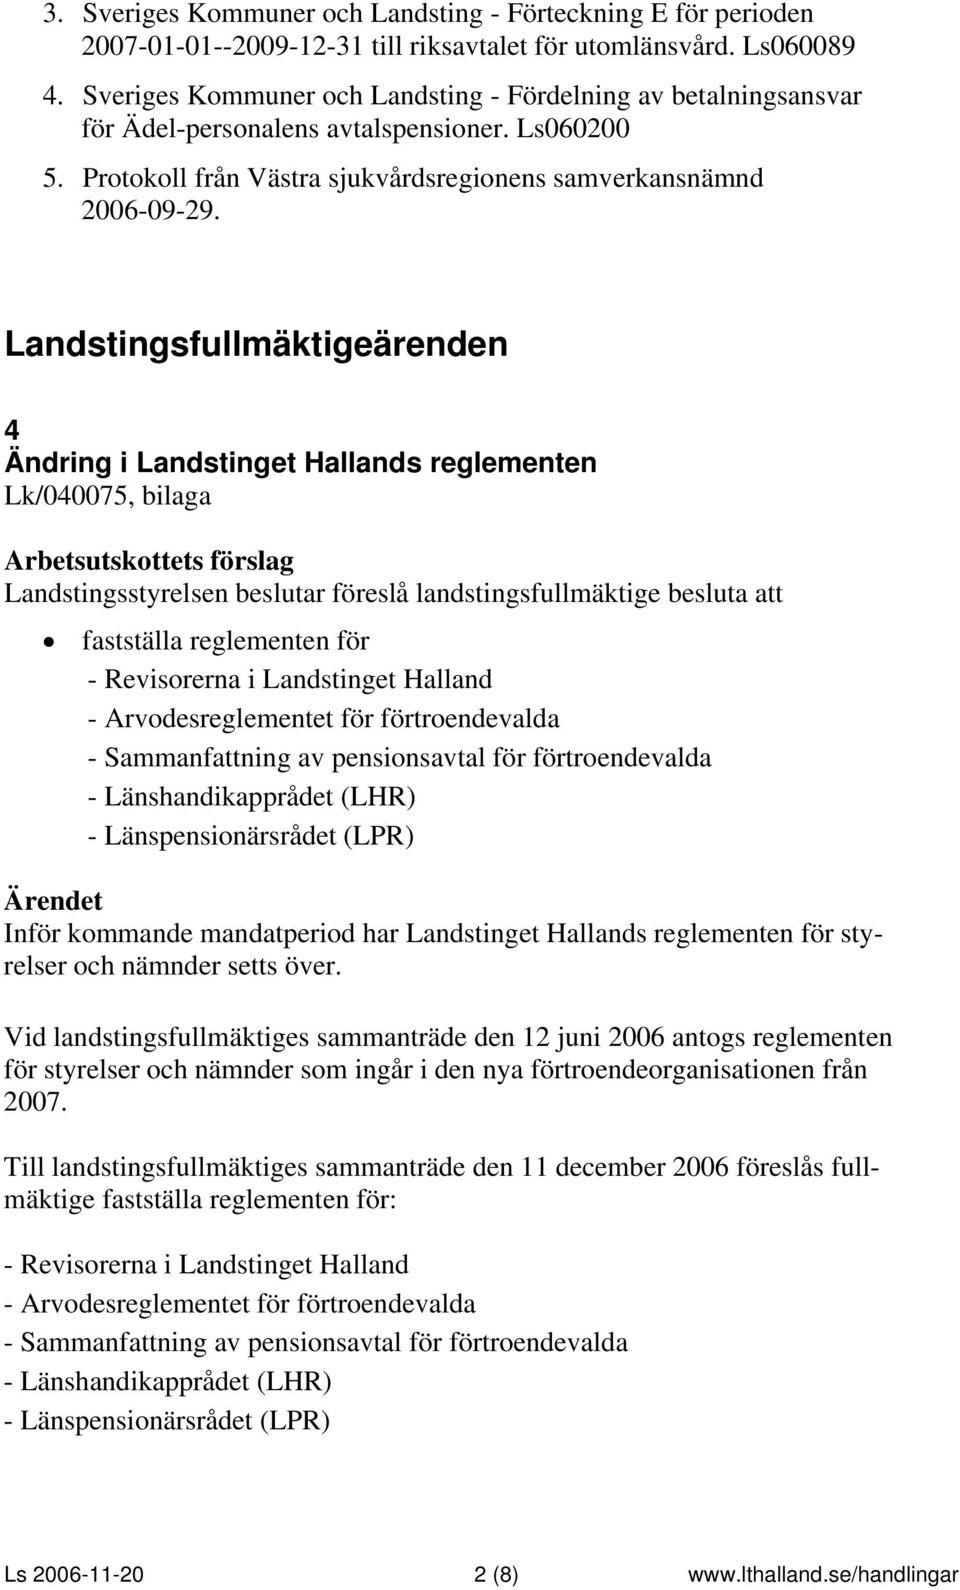 Landstingsfullmäktigeärenden 4 Ändring i Landstinget Hallands reglementen Lk/040075, bilaga Landstingsstyrelsen beslutar föreslå landstingsfullmäktige besluta att fastställa reglementen för -